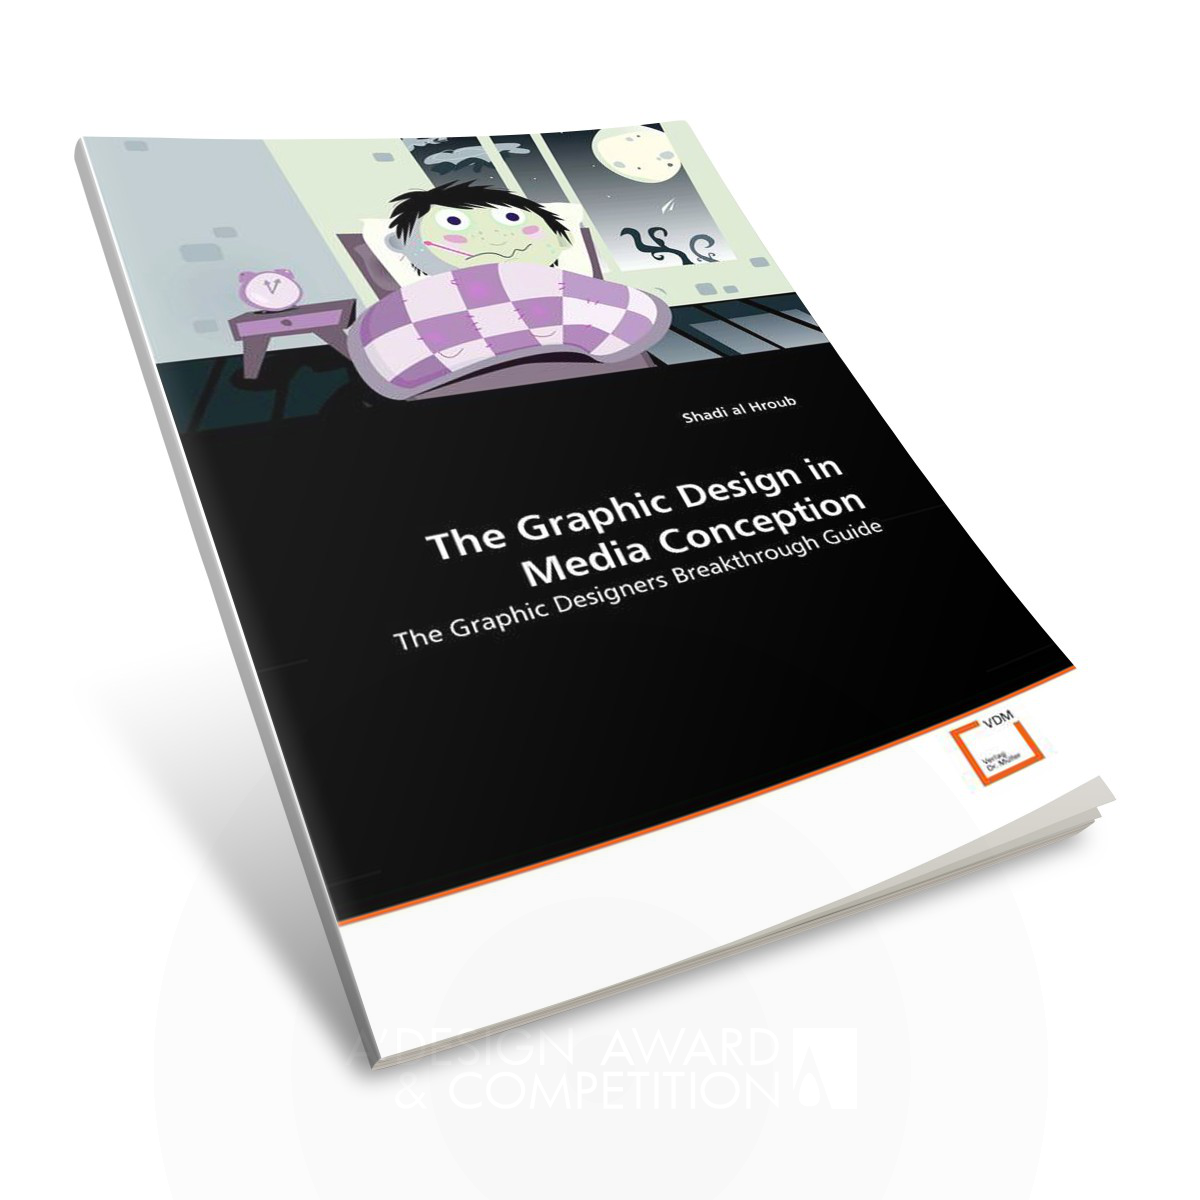 The Graphic Design in Media Conception Book Design